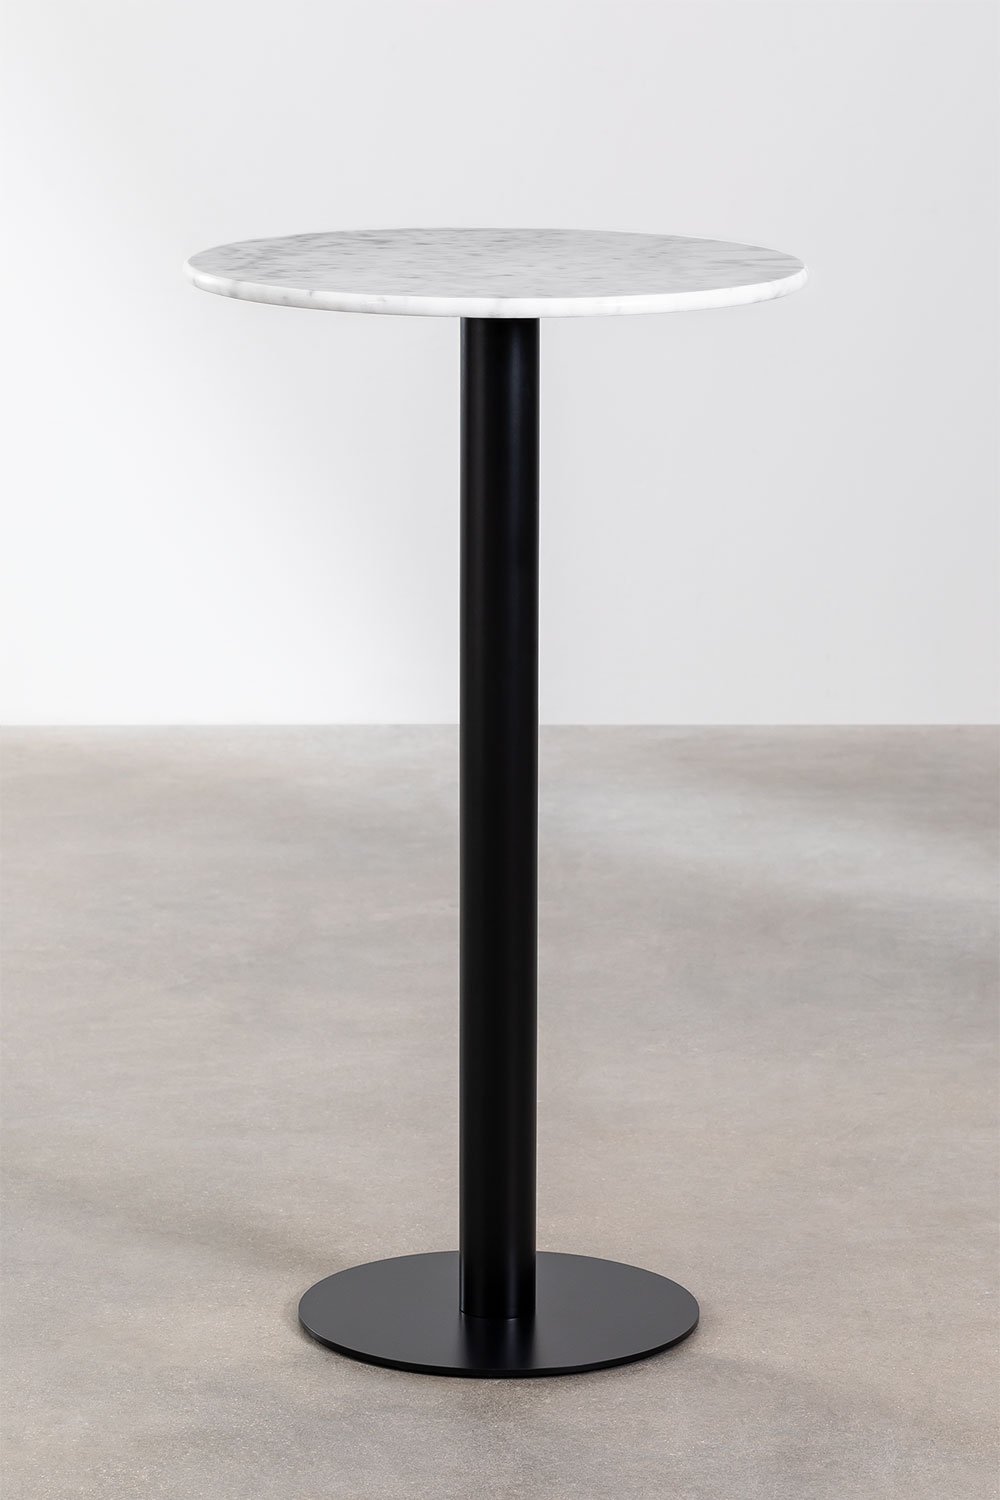 Ronde hoge bartafel in marmer (Ø60 cm) Rocher, galerij beeld 1